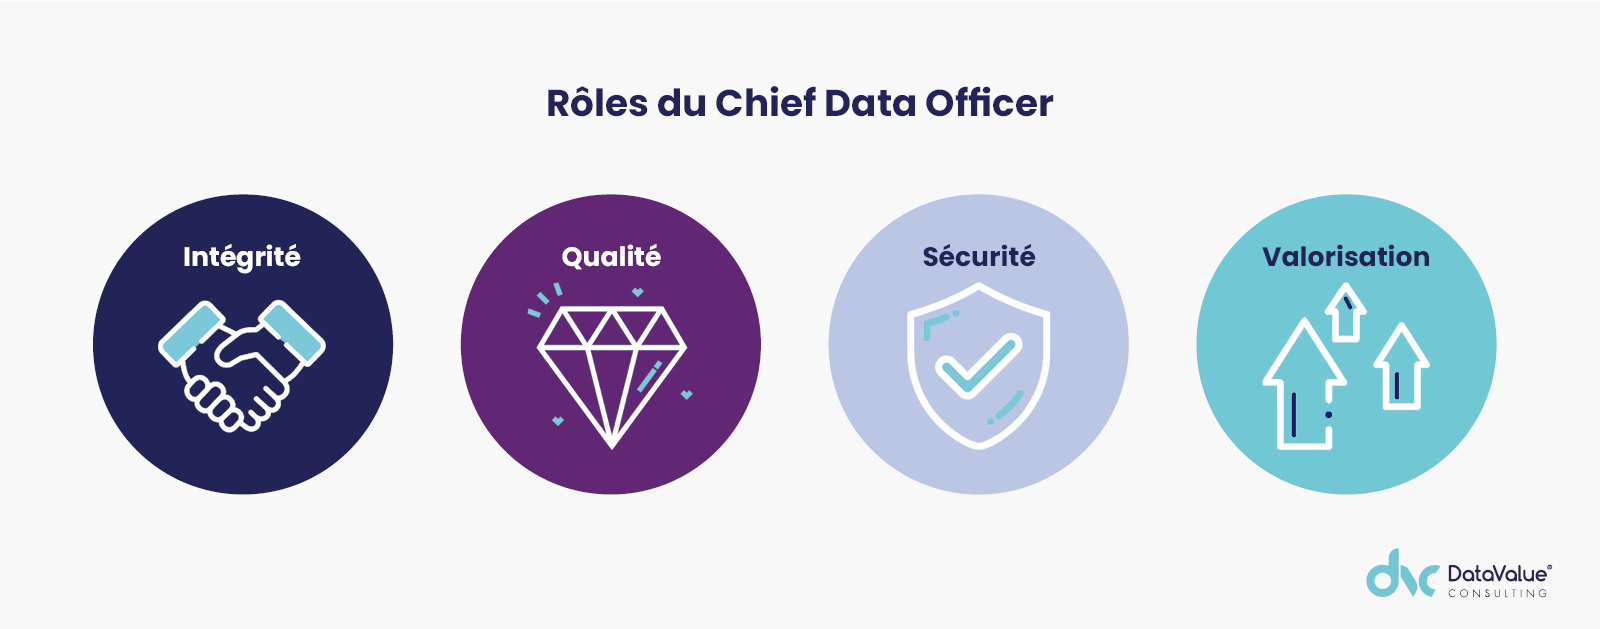 Les rôles du Chief Data Officer